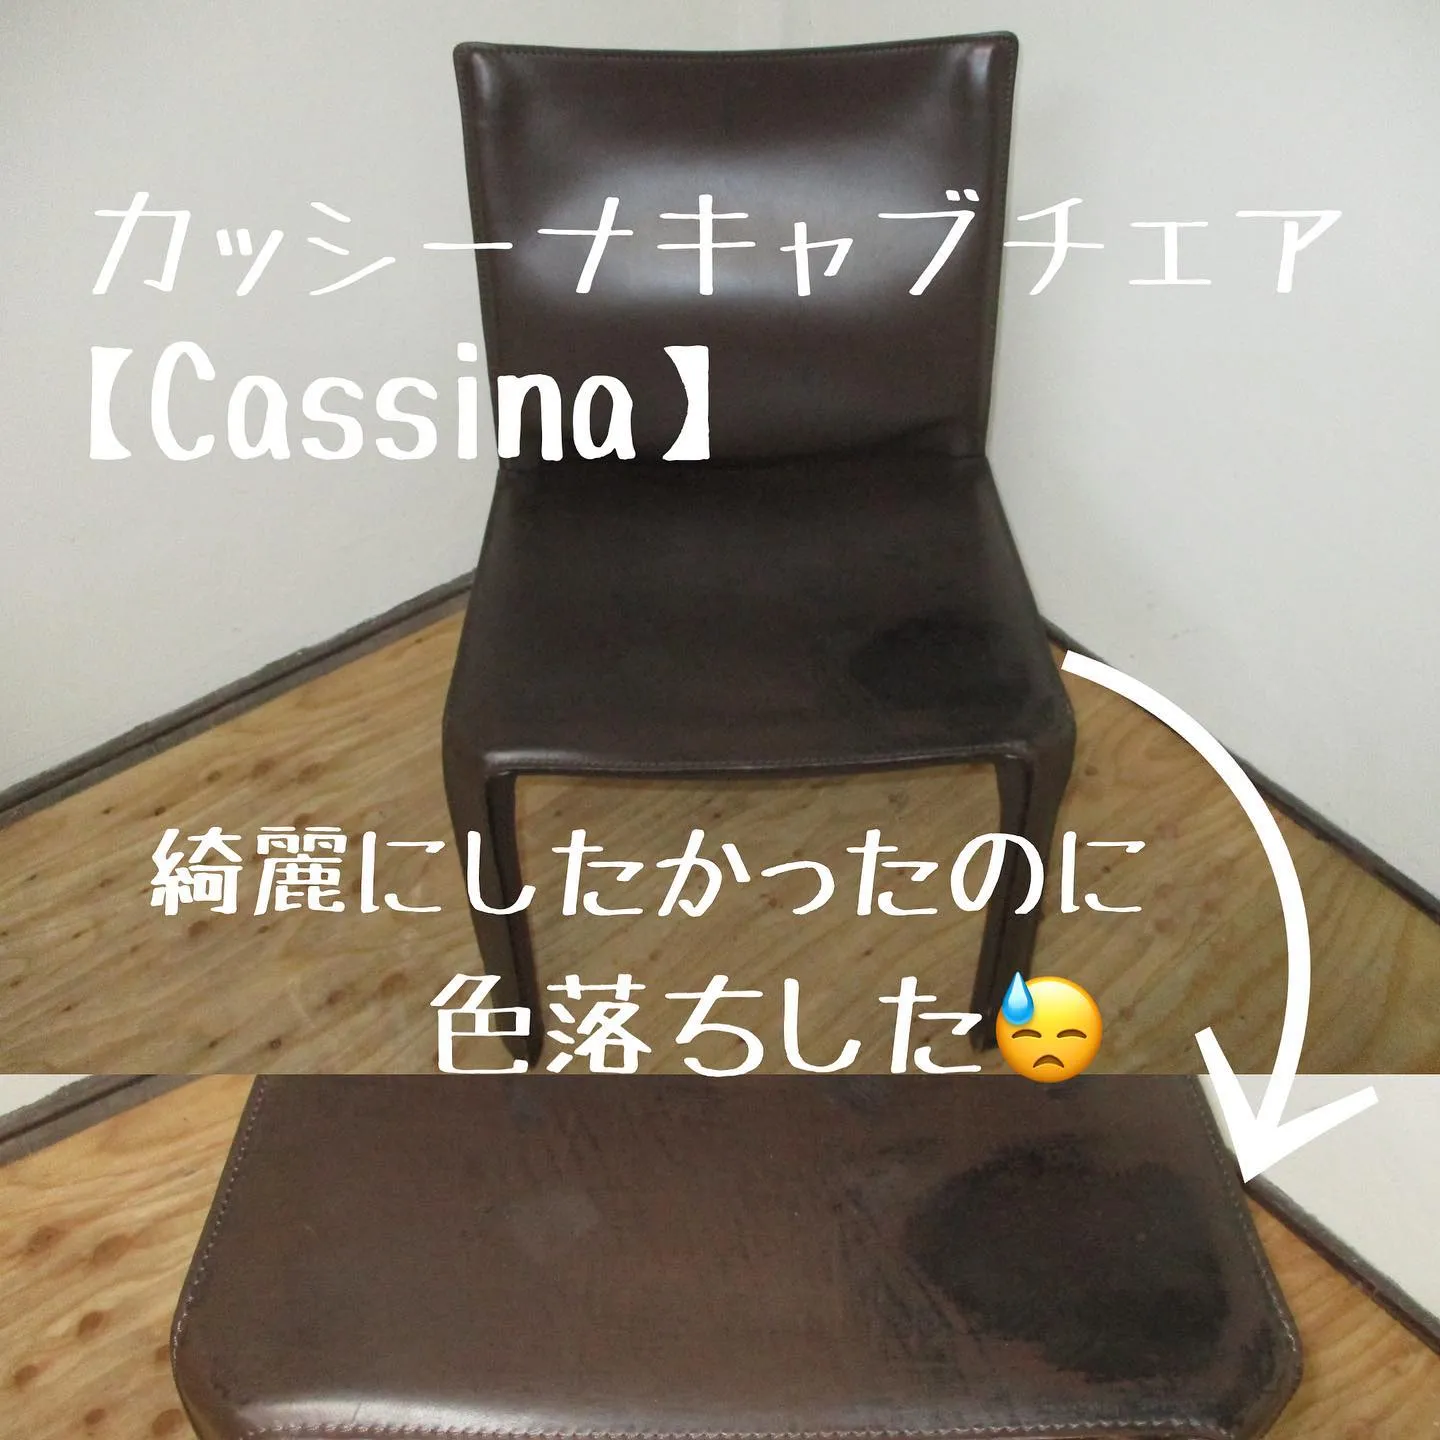 カッシーナ【Cassina】キャブチェア